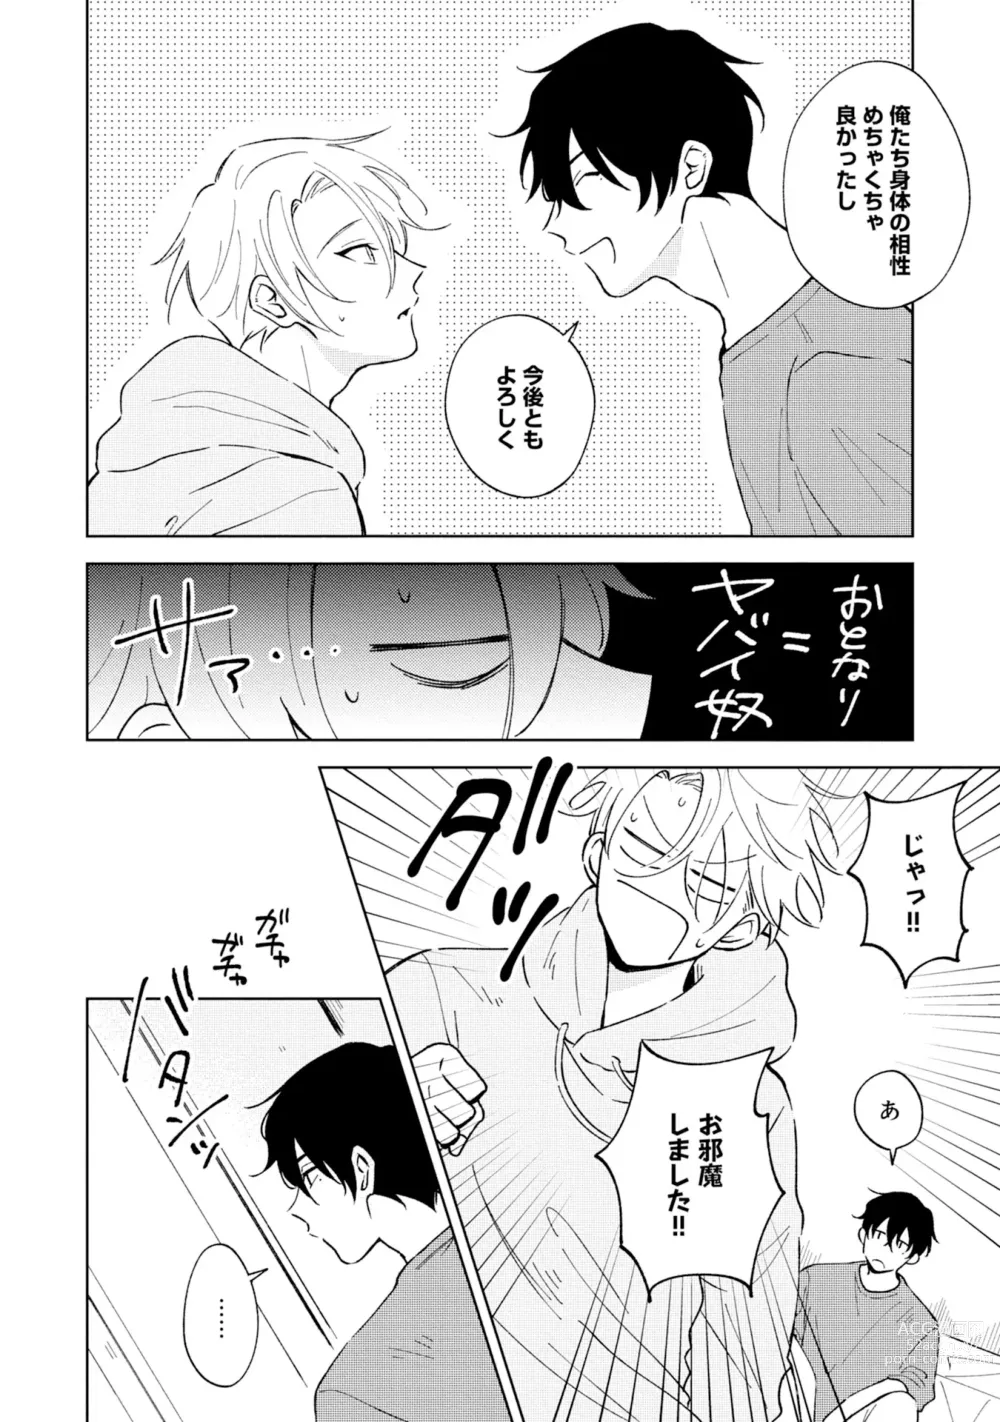 Page 4 of manga Toho 3-byou no Trouble Love Room 2